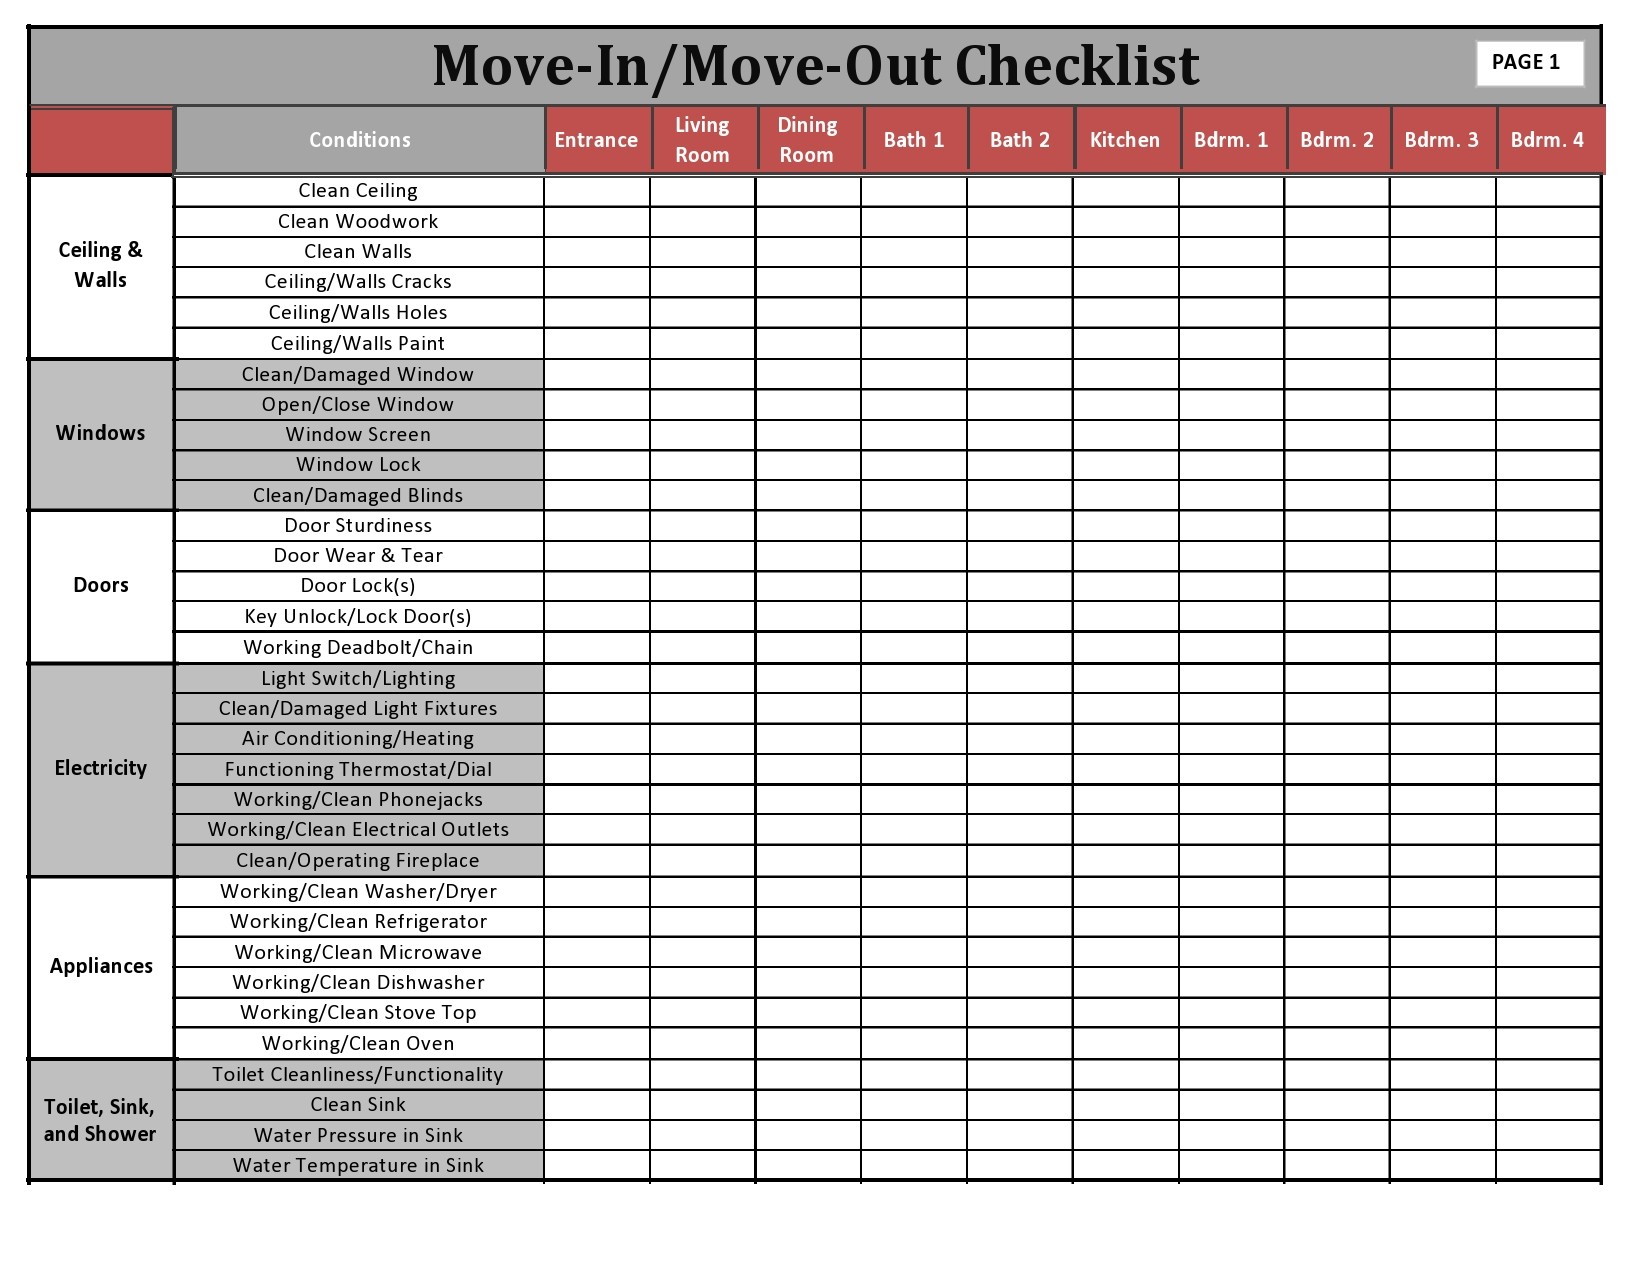 Free move in checklist 13